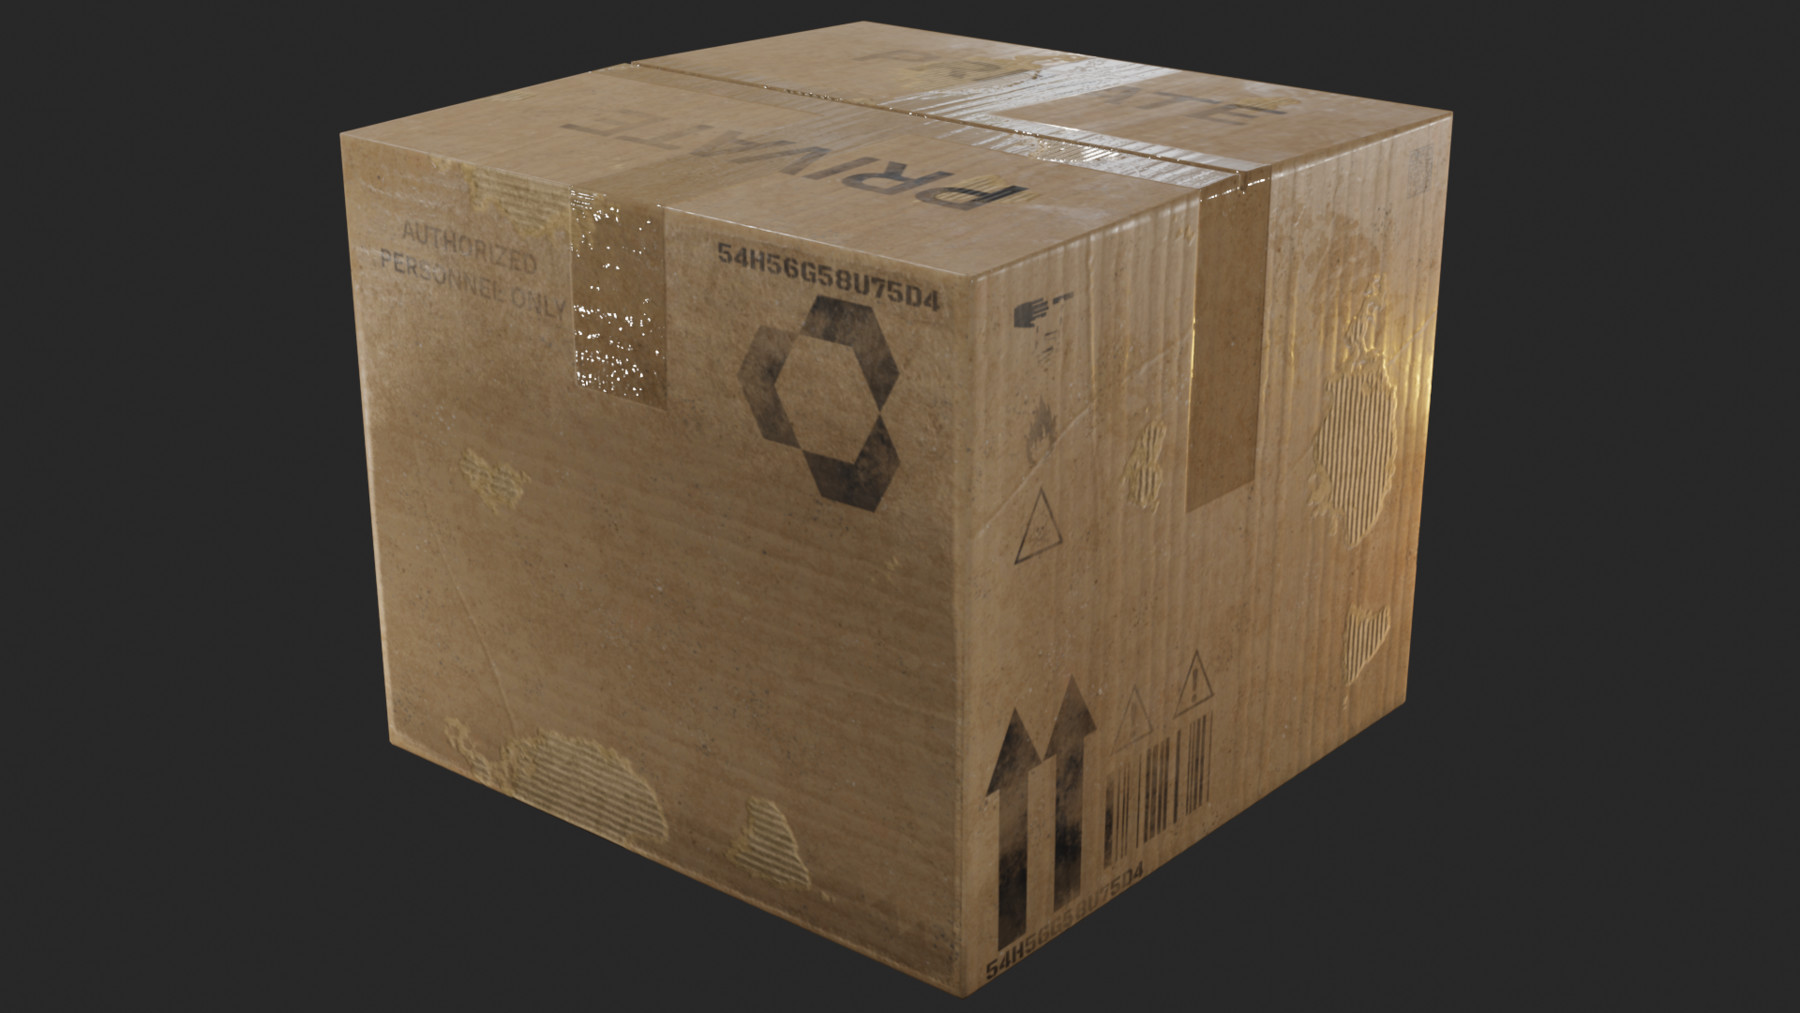 Unbekannt Happy 1019 Pro cardboardbox 3D de Puzzle 6 Unidades